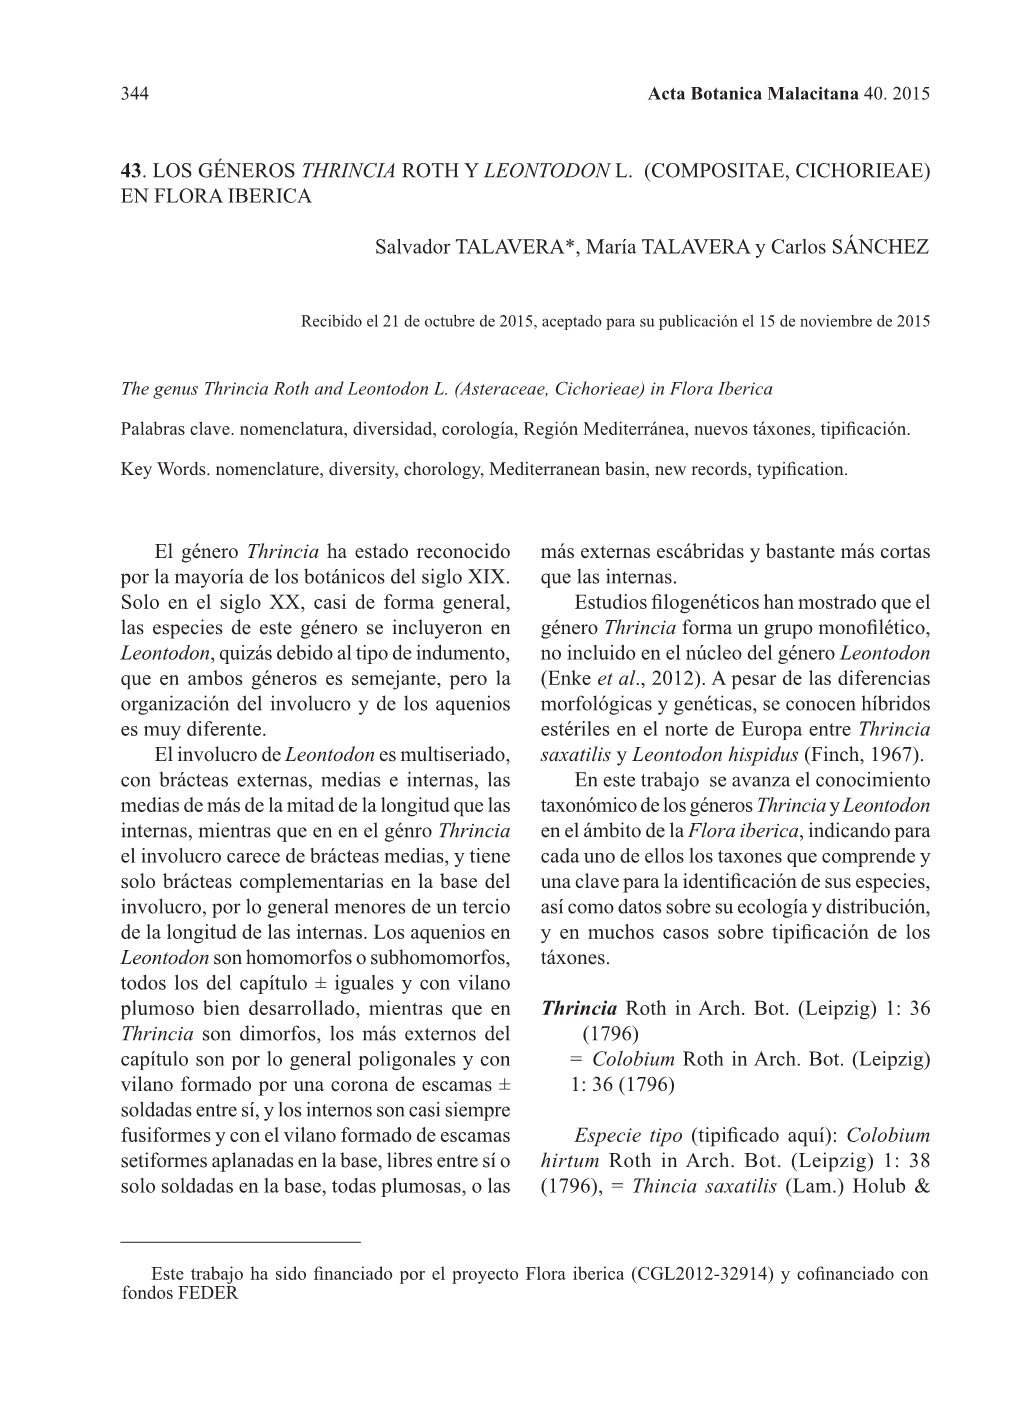 43. Los Géneros Thrincia Roth Y Leontodon L. (Compositae, Cichorieae) En Flora Iberica